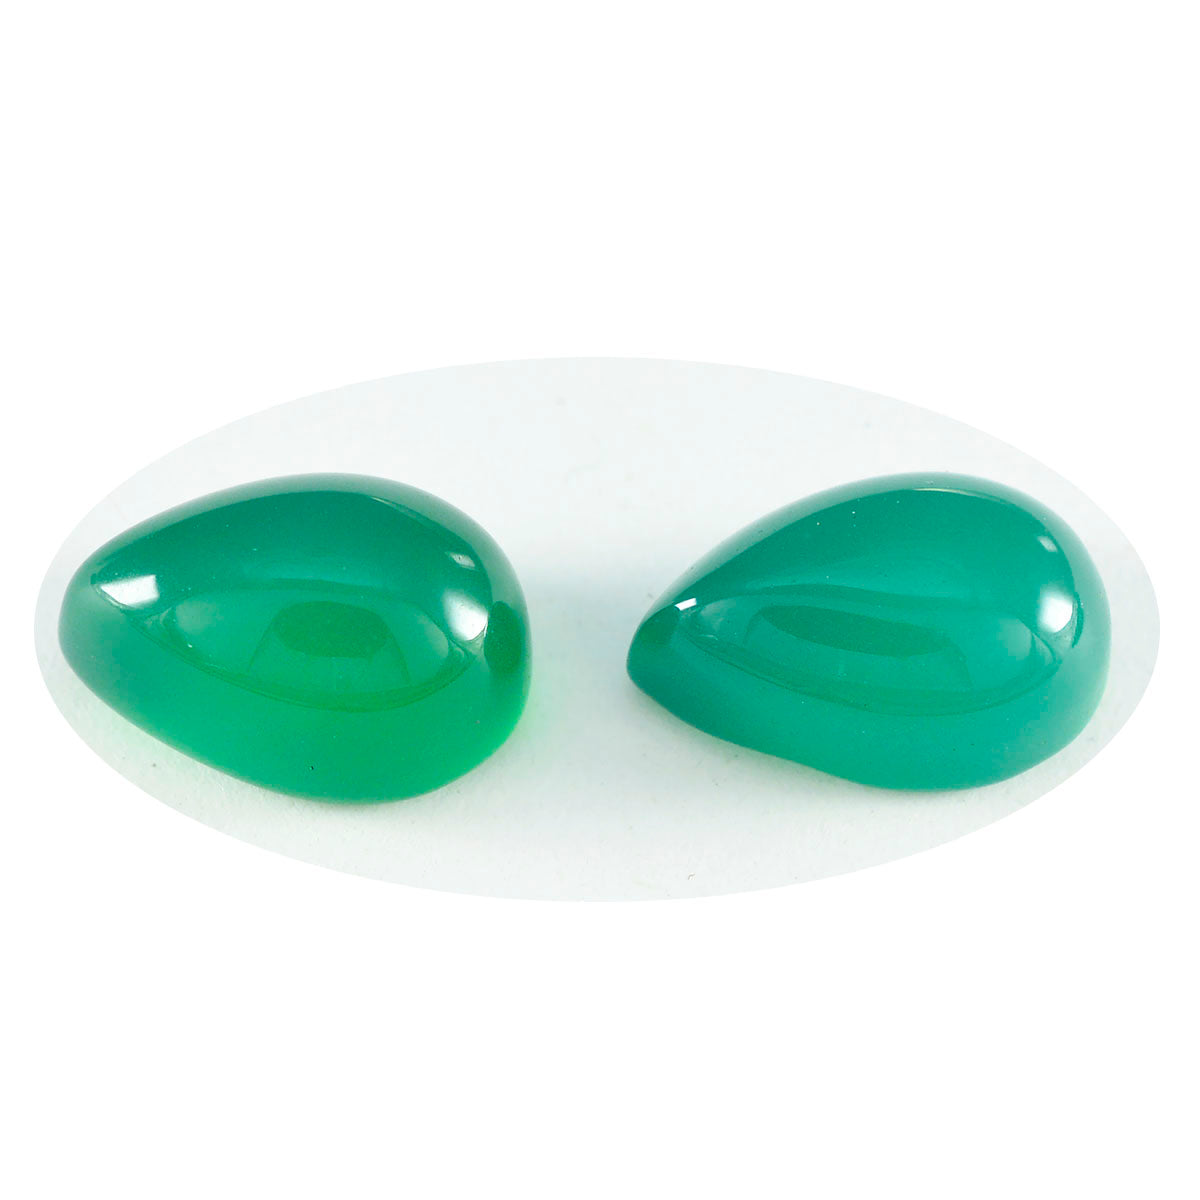 Riyogems 1 pieza cabujón de ónix verde 7x10 mm forma de pera piedra preciosa de calidad encantadora